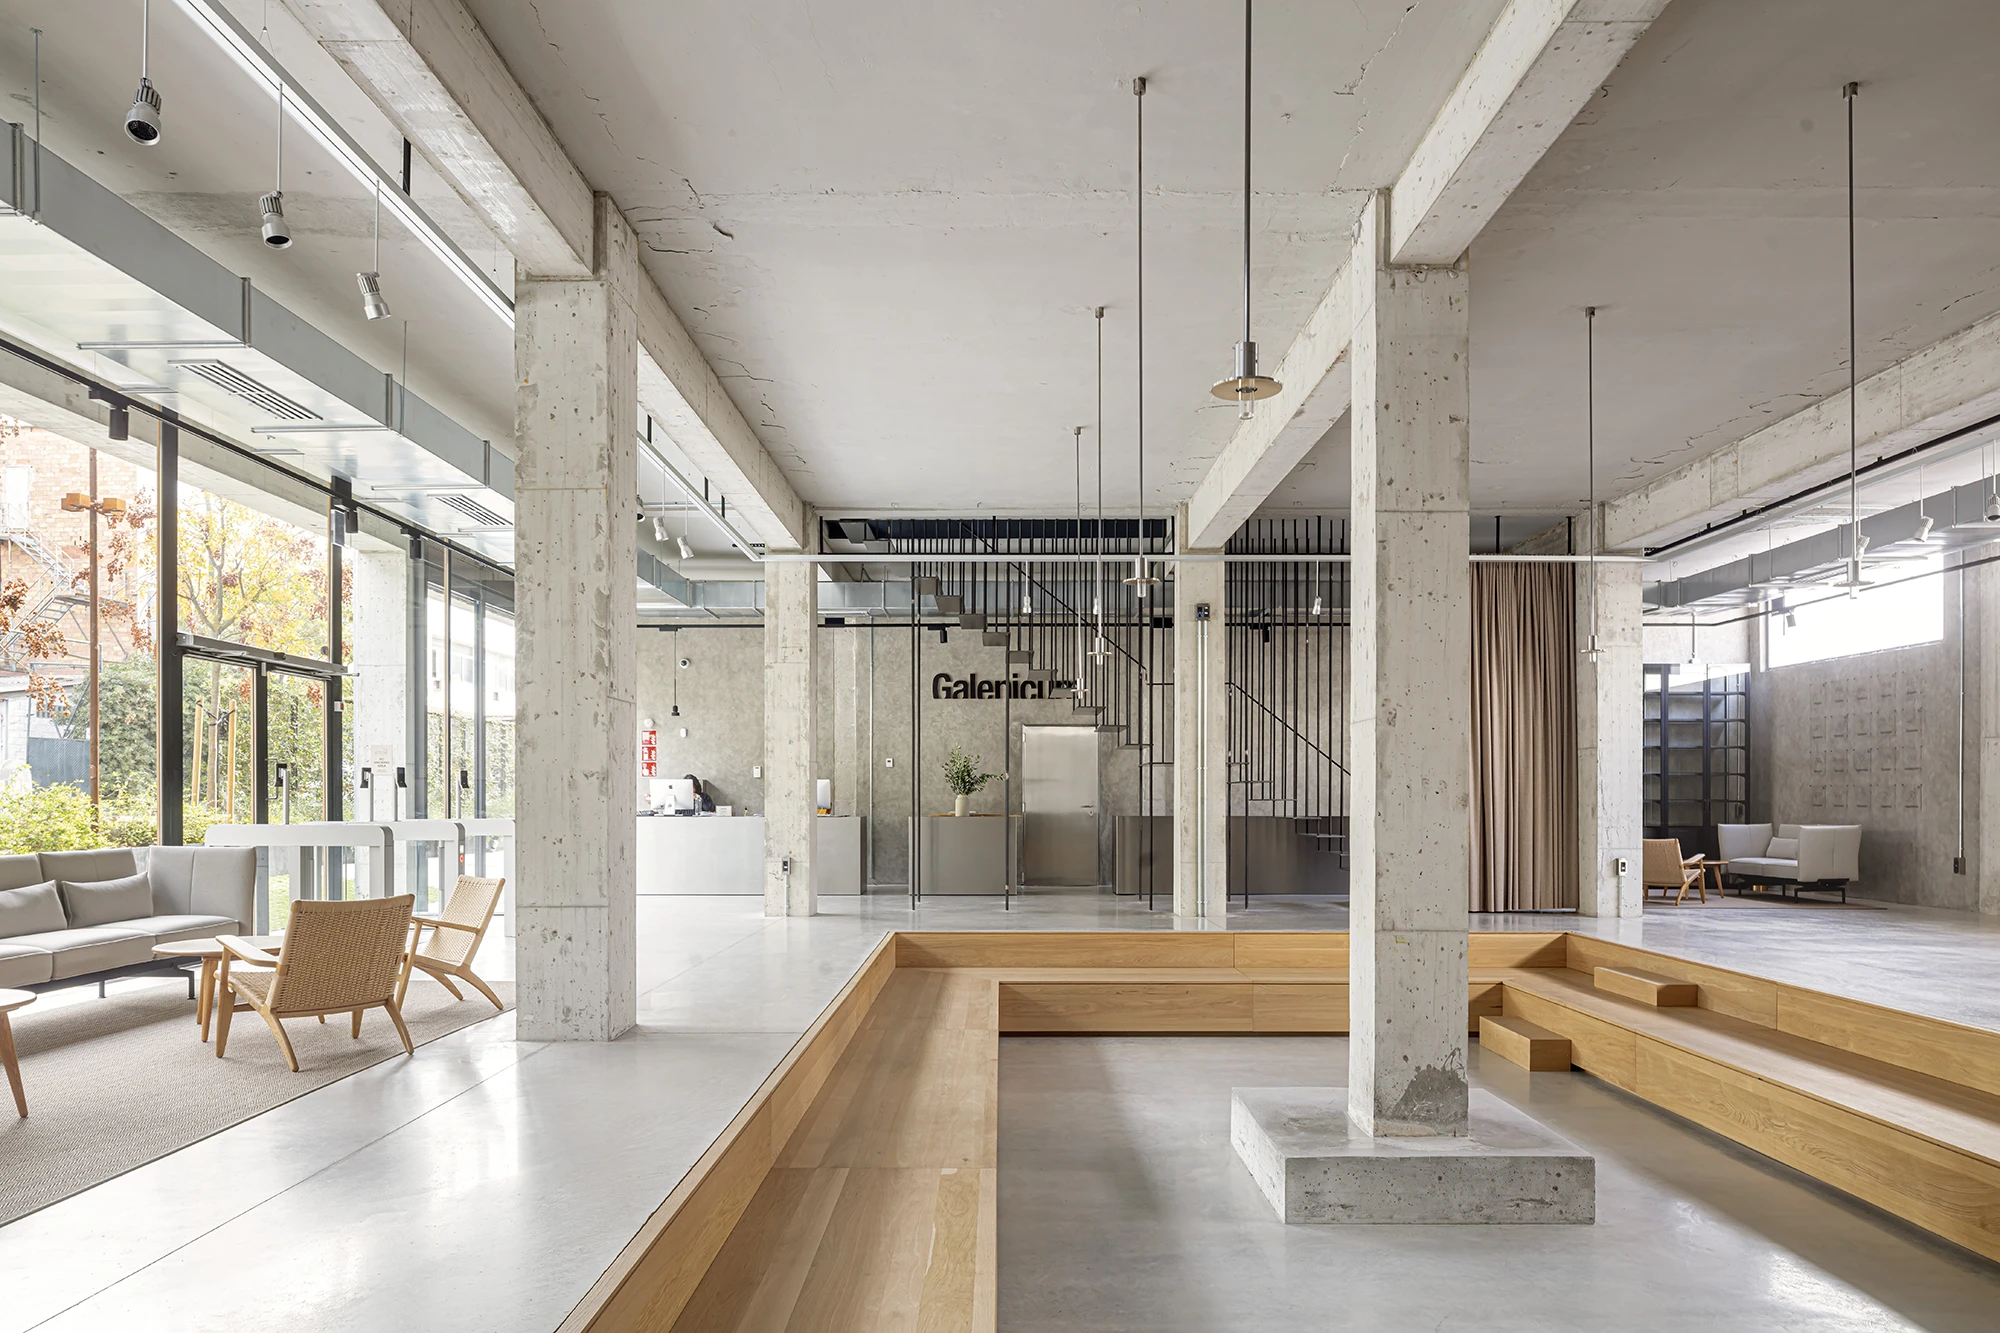 Edificio ganador del Premio Rehabilitación 2023 y Premio ex aequo Arquitectura Española 2023